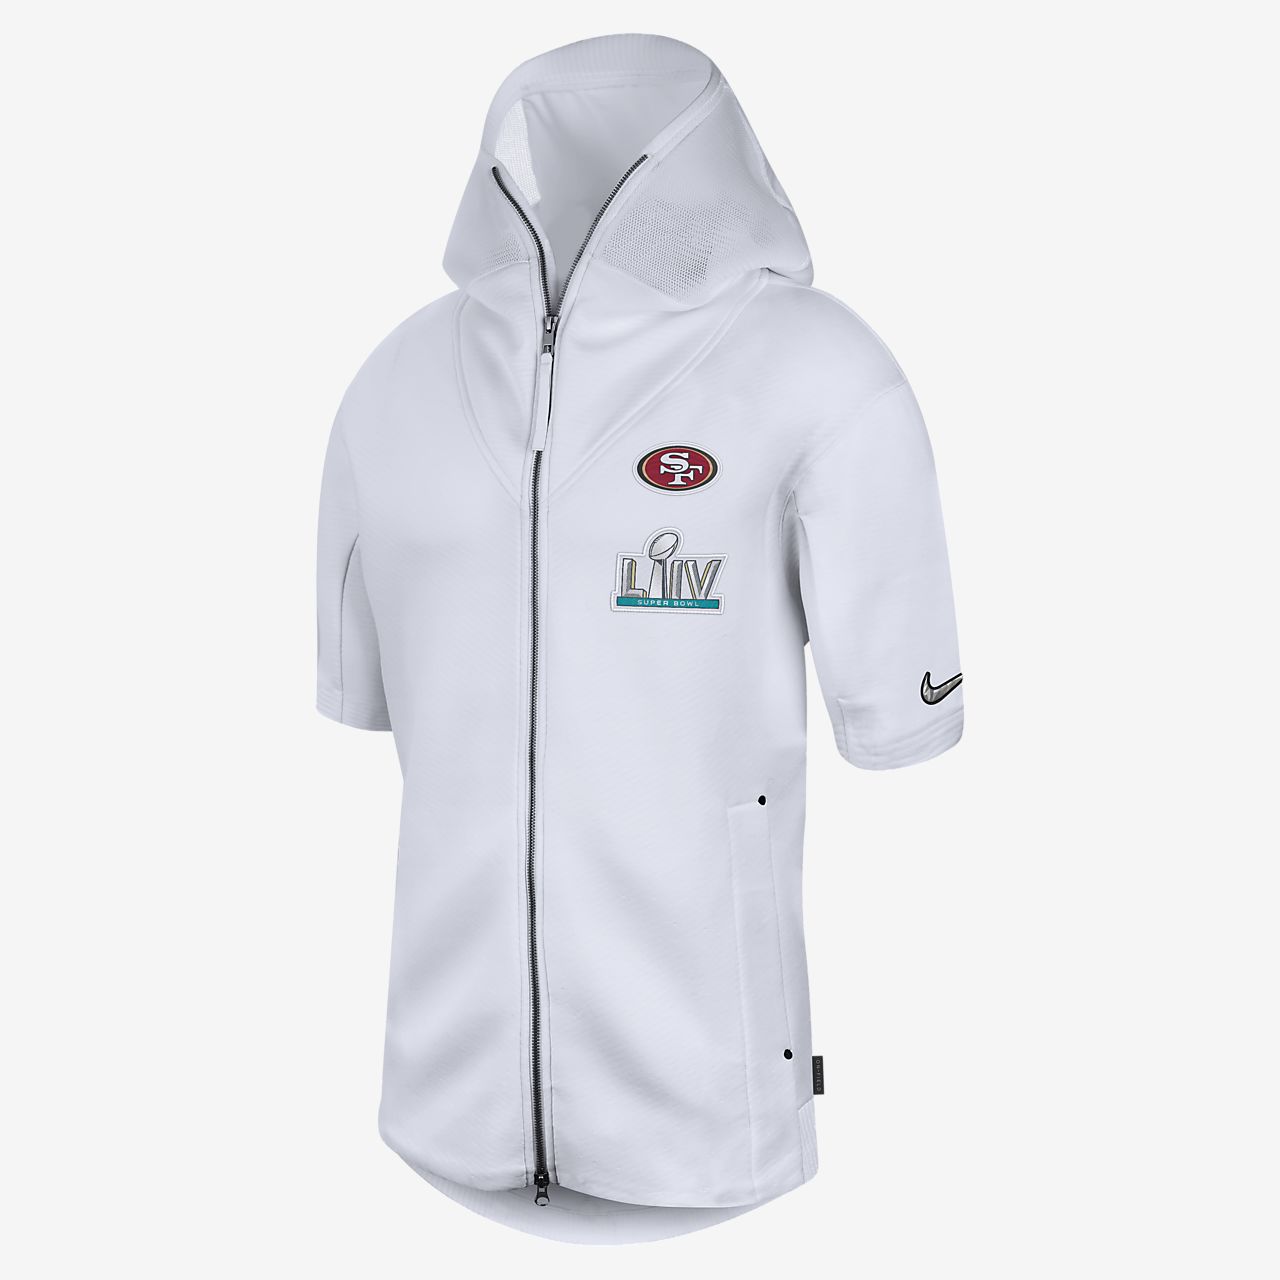 men's nike 49ers hoodie